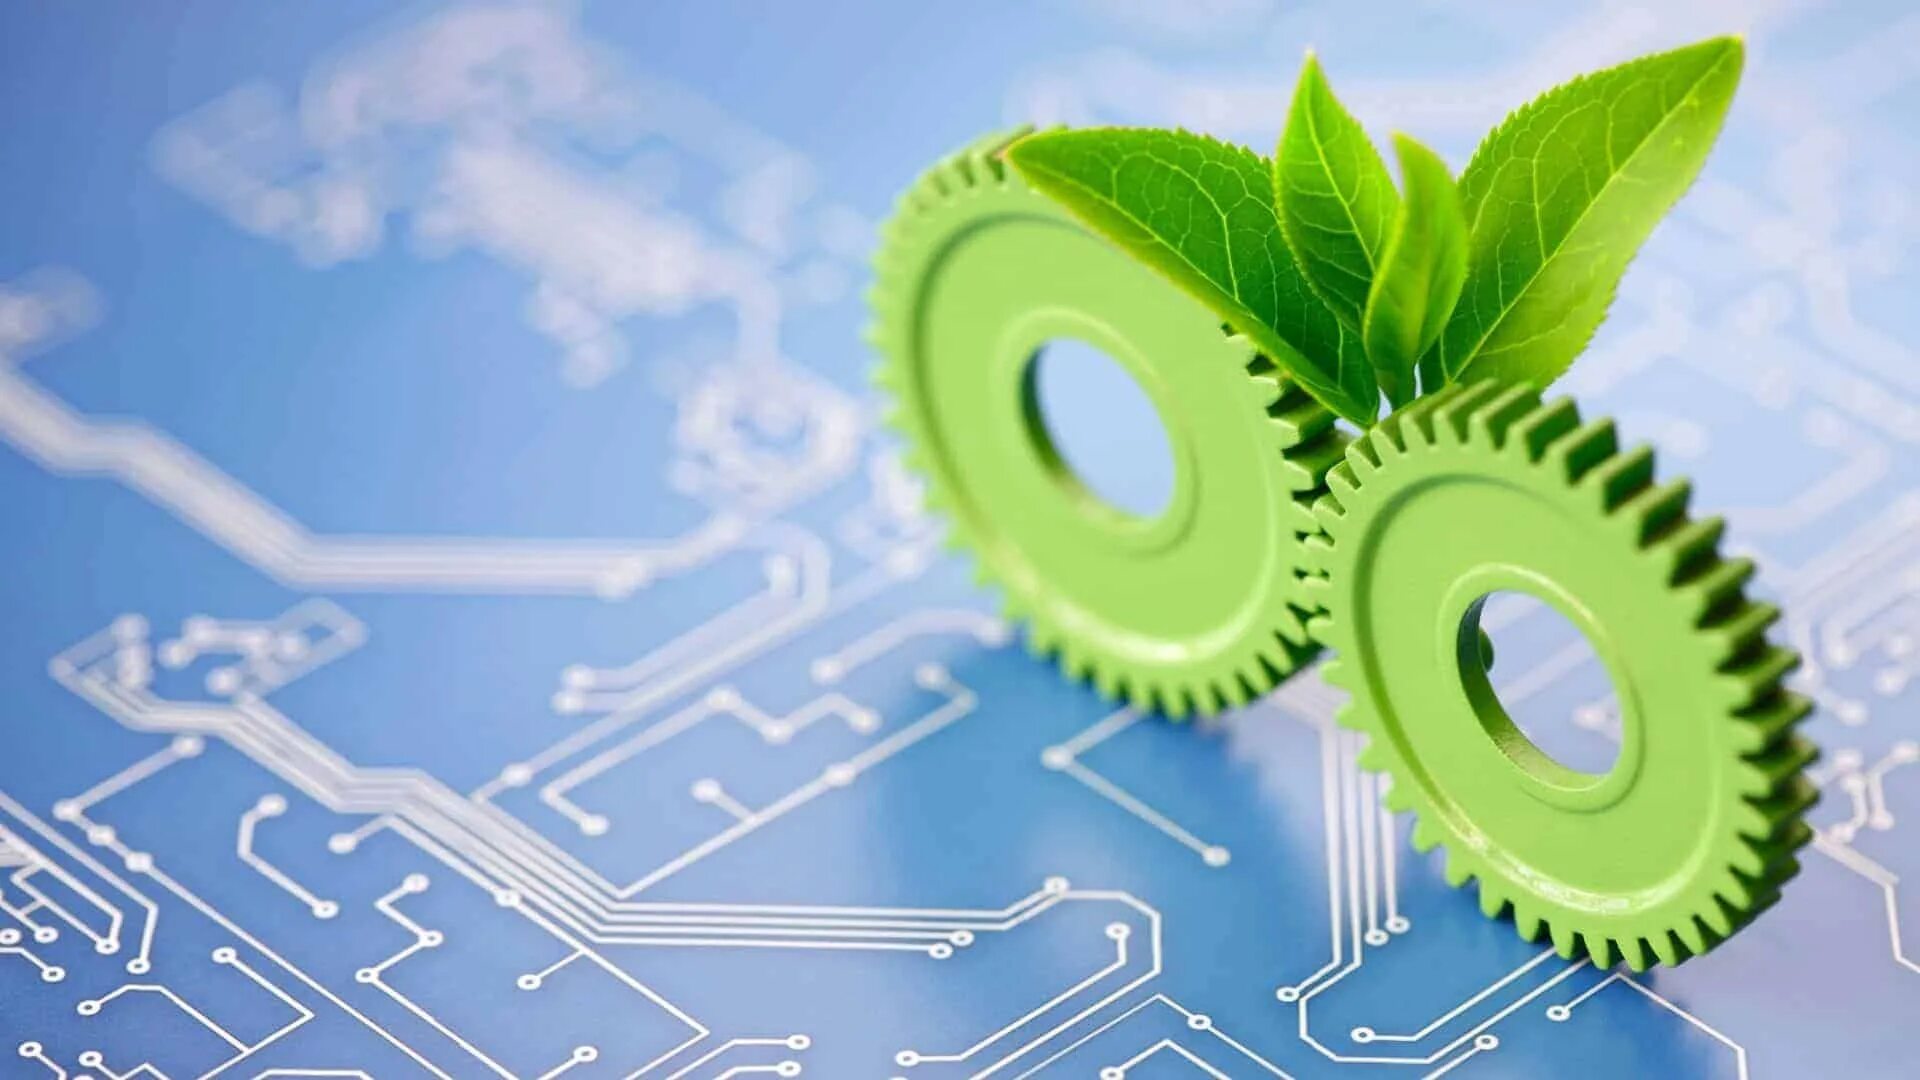 Технологиям из лучших материалов. Зеленые технологии. Зеленые технологии в машиностроении. "Зеленые" технологии для бизнеса. Зеленые технологии картинки.